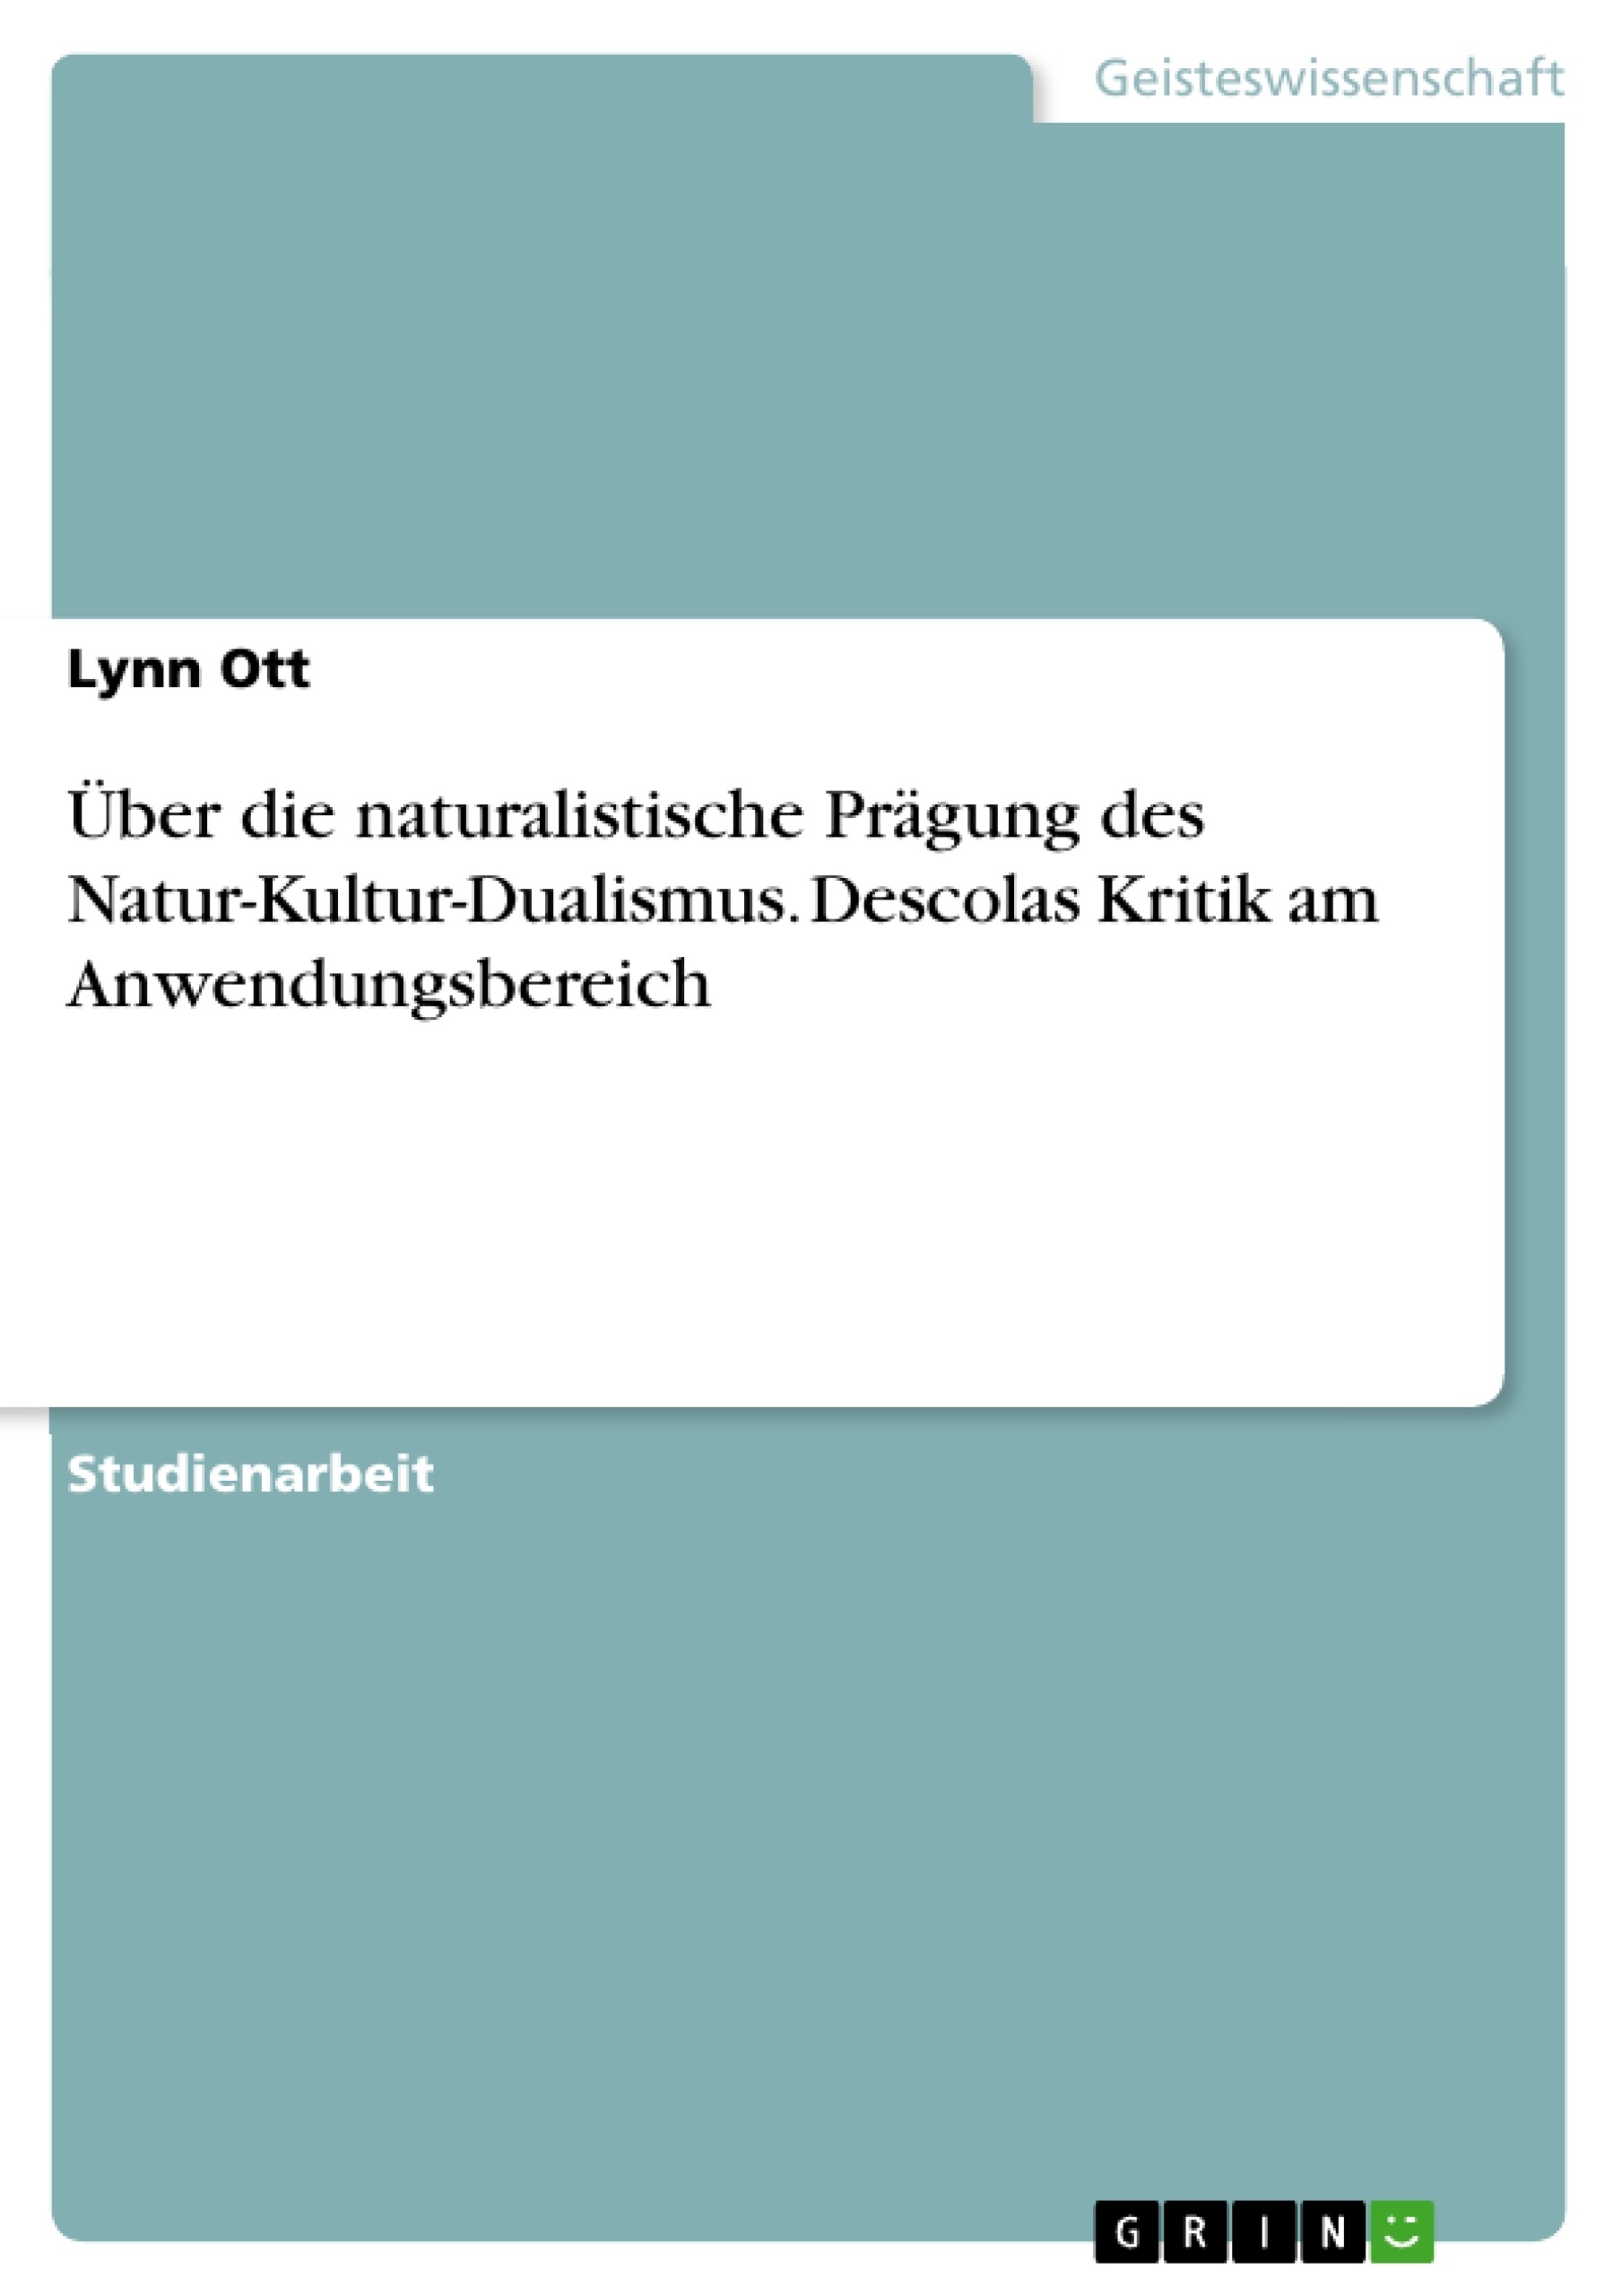 Title: Über die naturalistische Prägung des Natur-Kultur-Dualismus. Descolas Kritik am Anwendungsbereich